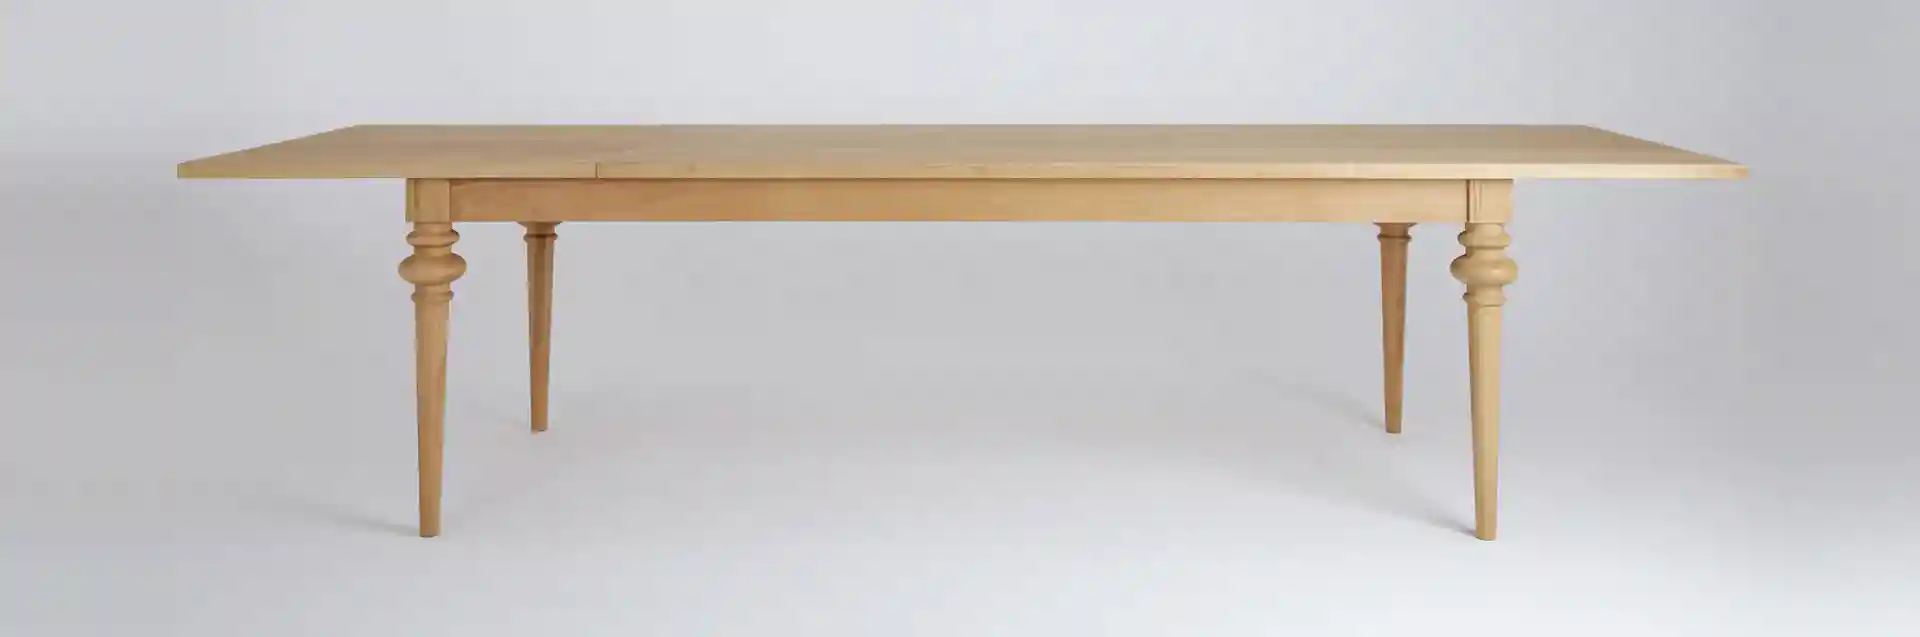 Stół drewniany dębowy rozkładany MILONI DECO, kolor 03:Natural, Wymiary: Dł: 200-285 x Sz: 90 x Wys: 76 cm, Przeznaczenie: Dla 12-14 osób, Kategorie: stoły dębowe, stoły rozkładane, stoły do kuchni, stoły do jadalni